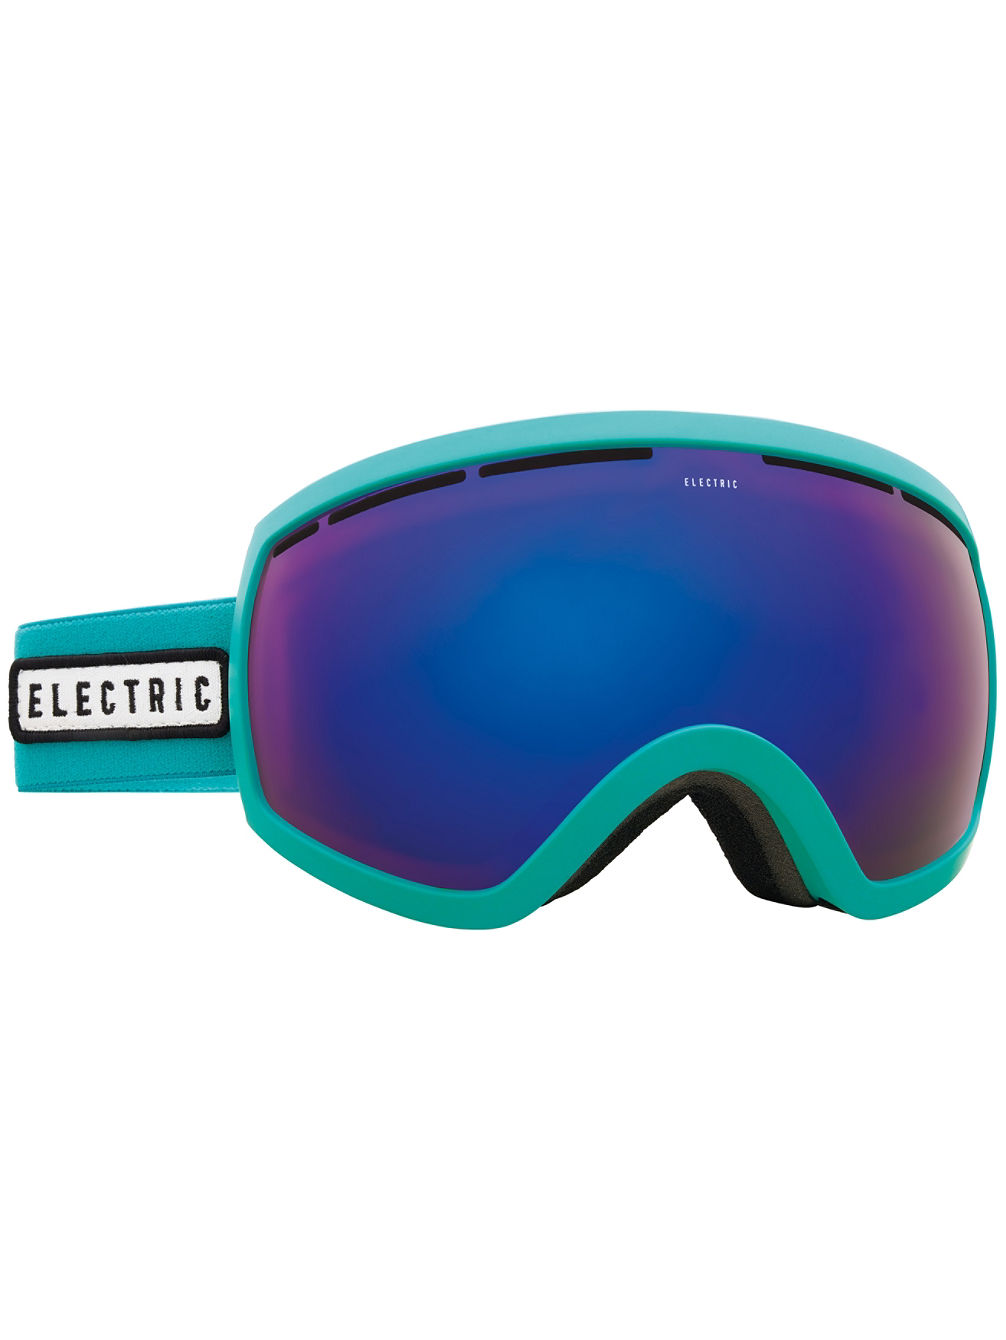 EG2.5 Turquoise Goggle